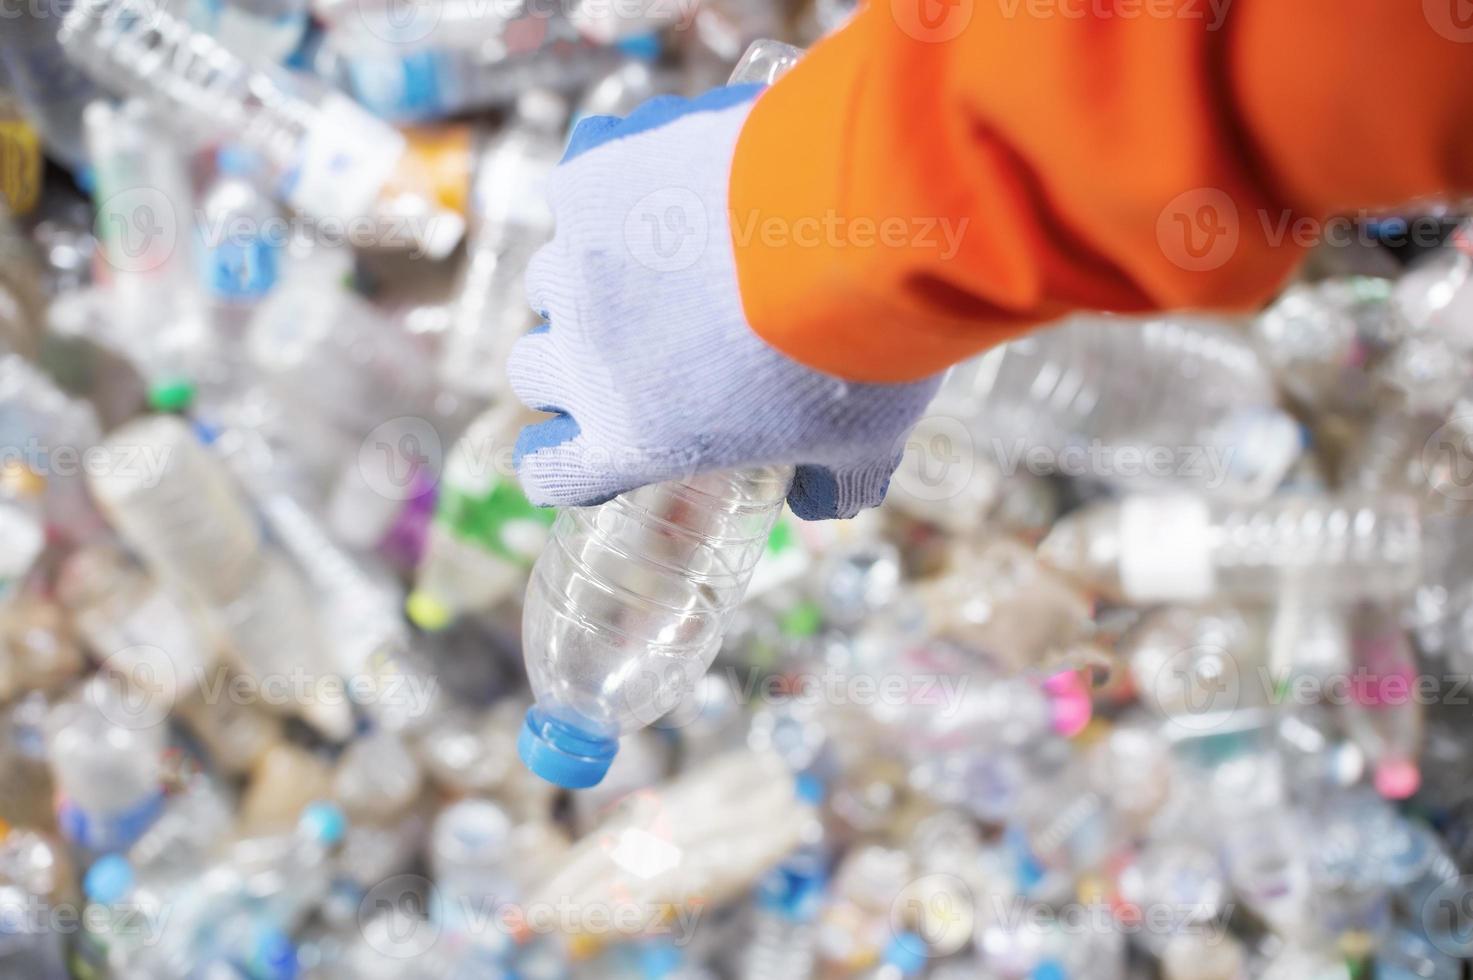 cerrar la mano del trabajador con la separación de la industria de reciclaje de botellas de plástico foto